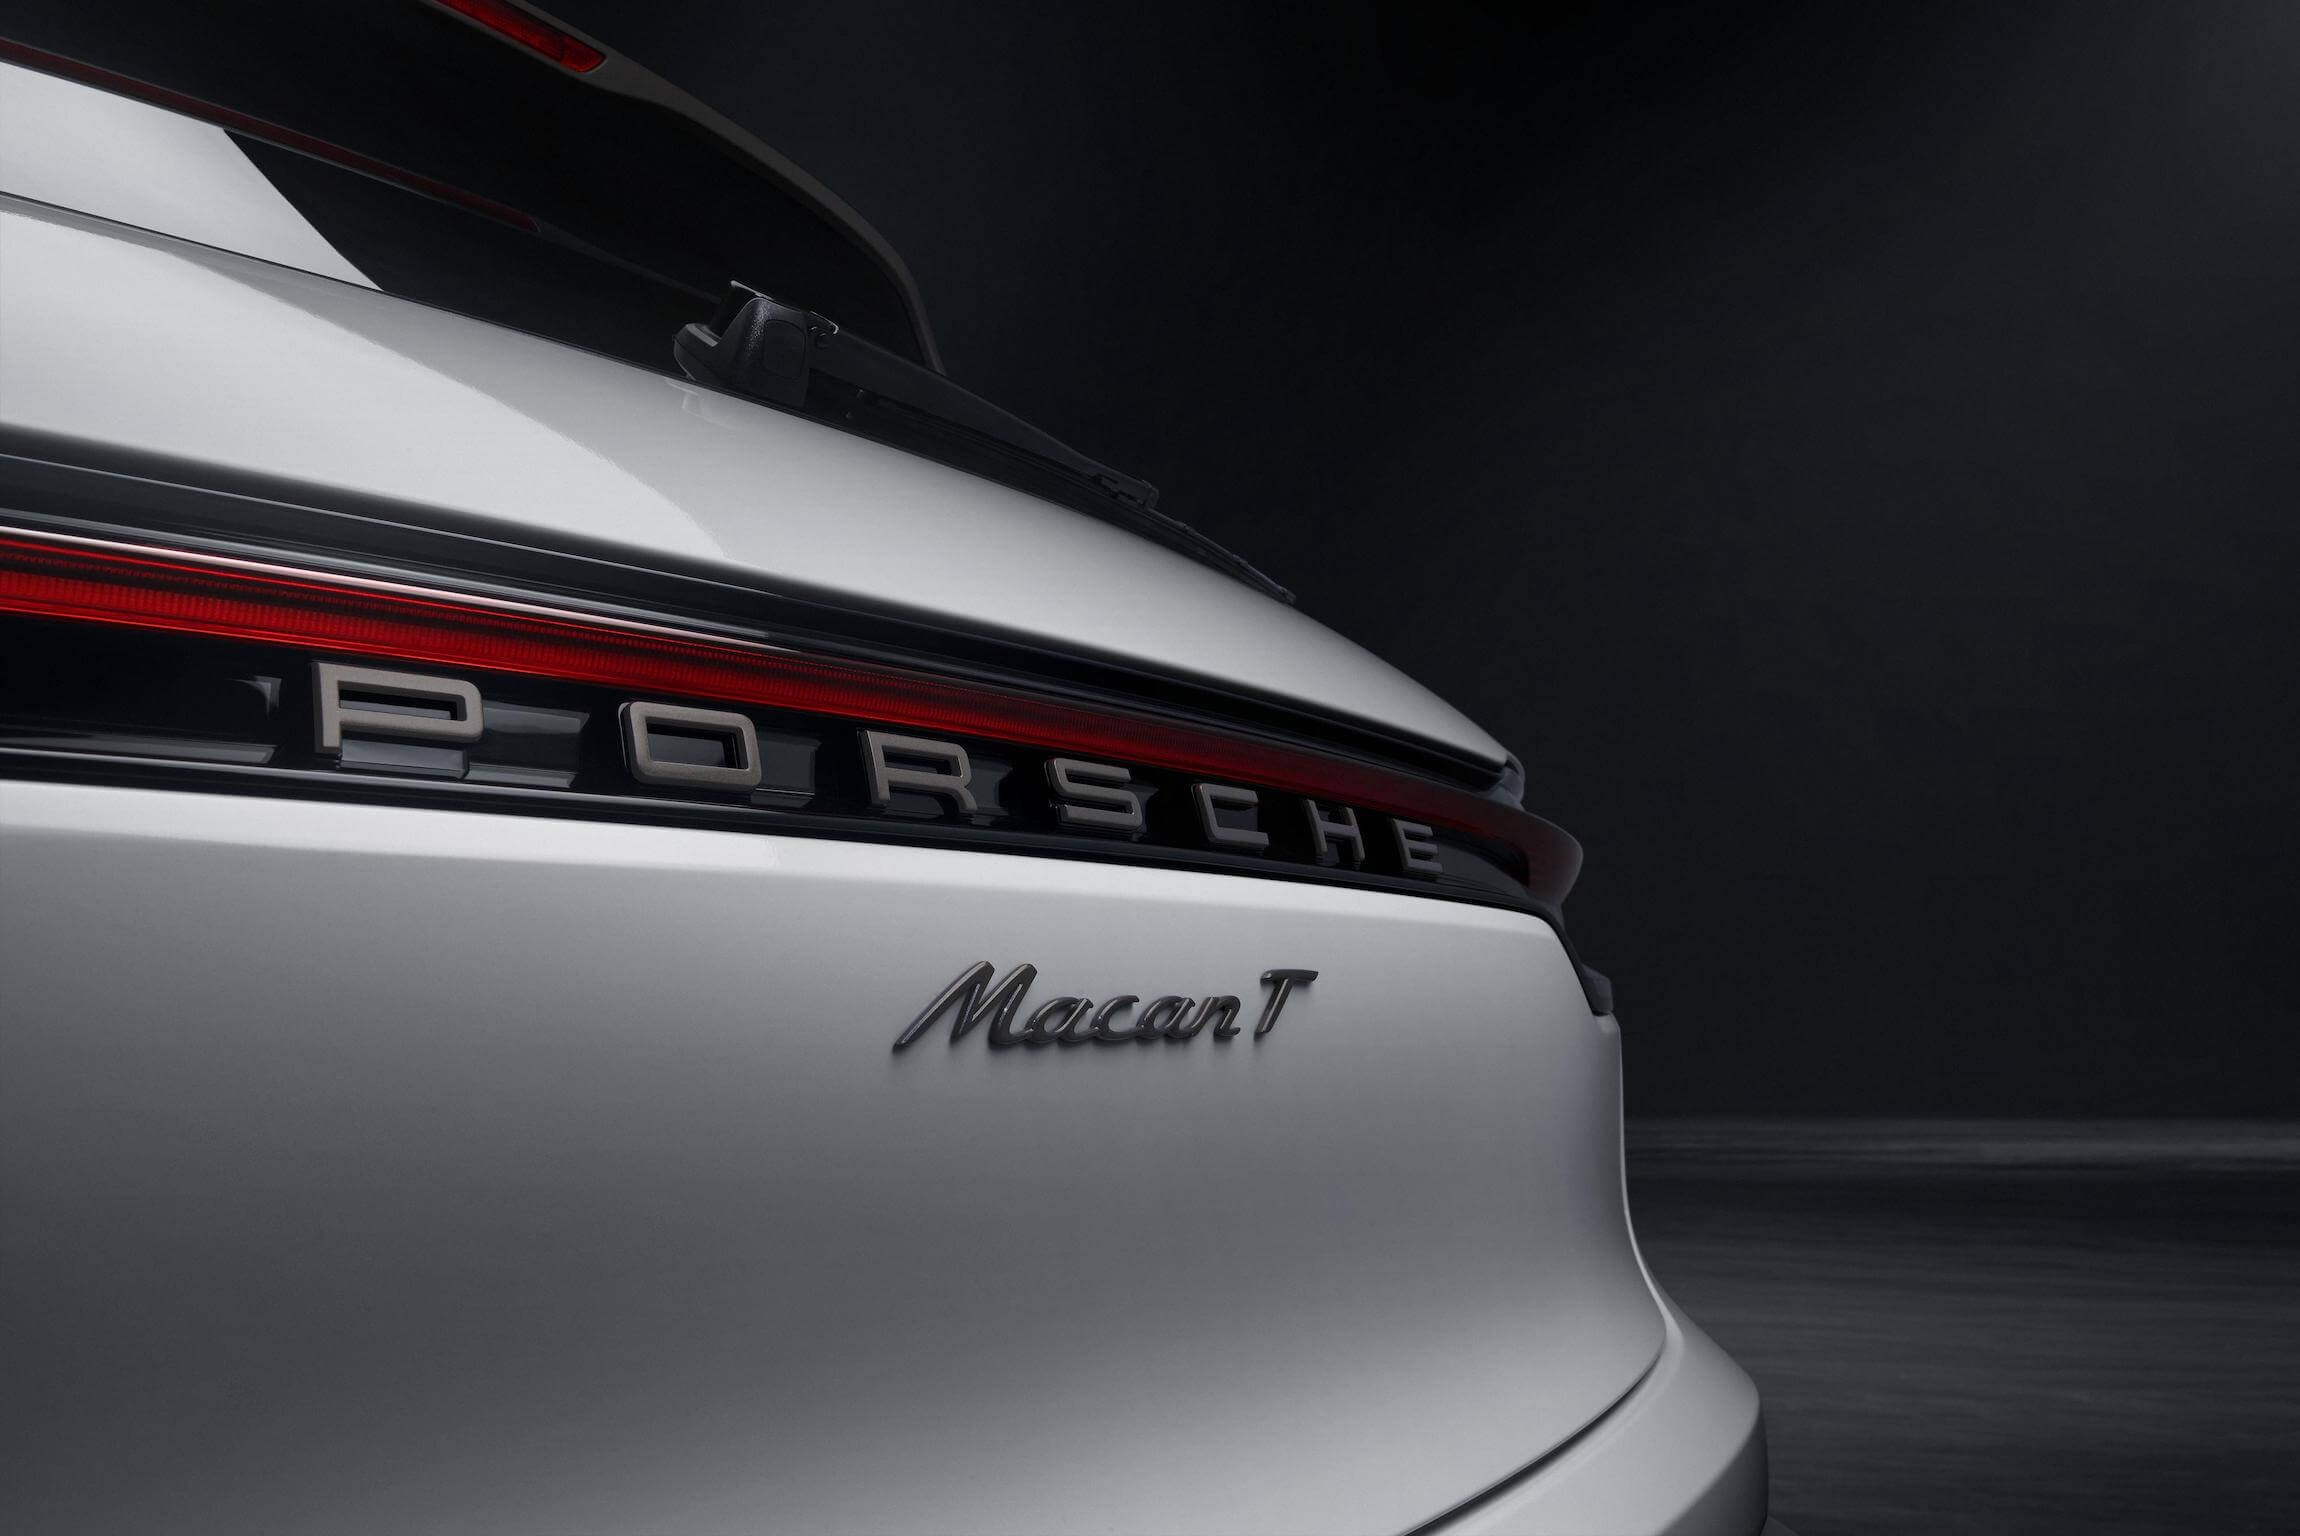 Porsche Macan T logo